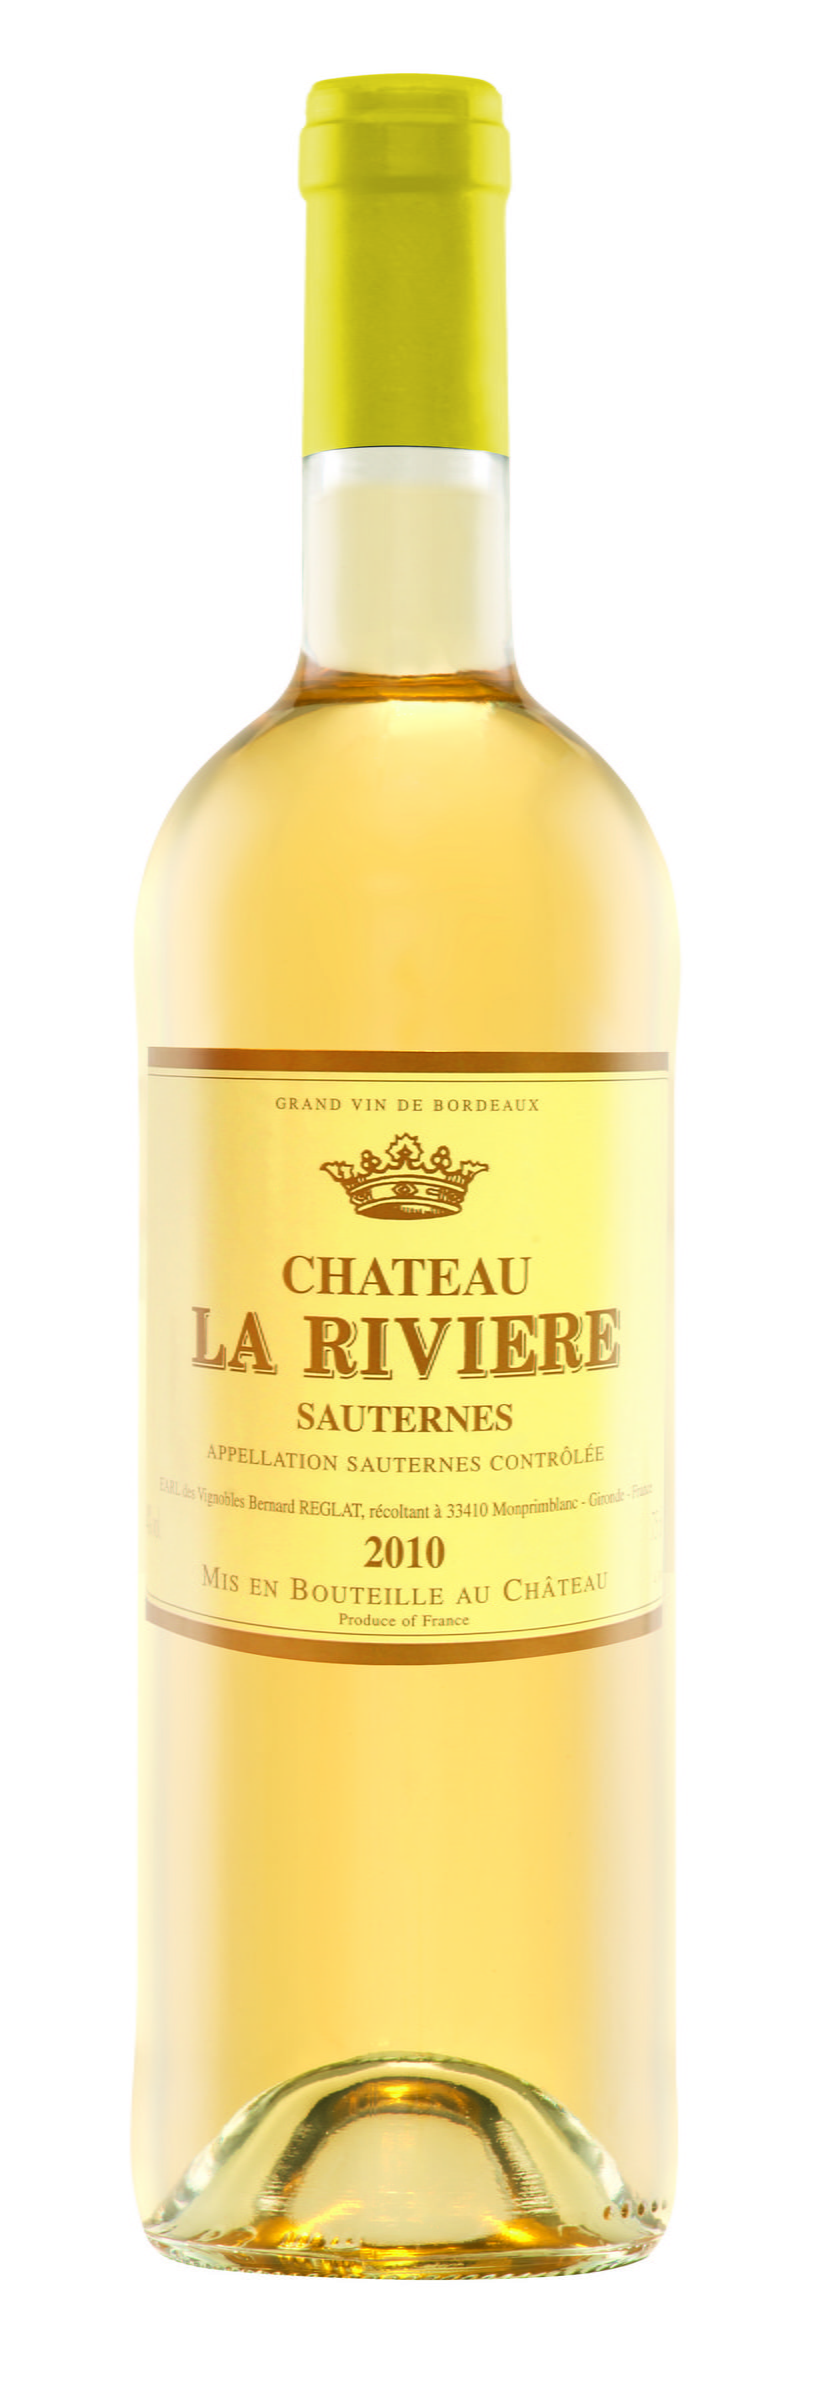 Château La Riviere Sauternes 2010 (49,99 zł, Lidl)